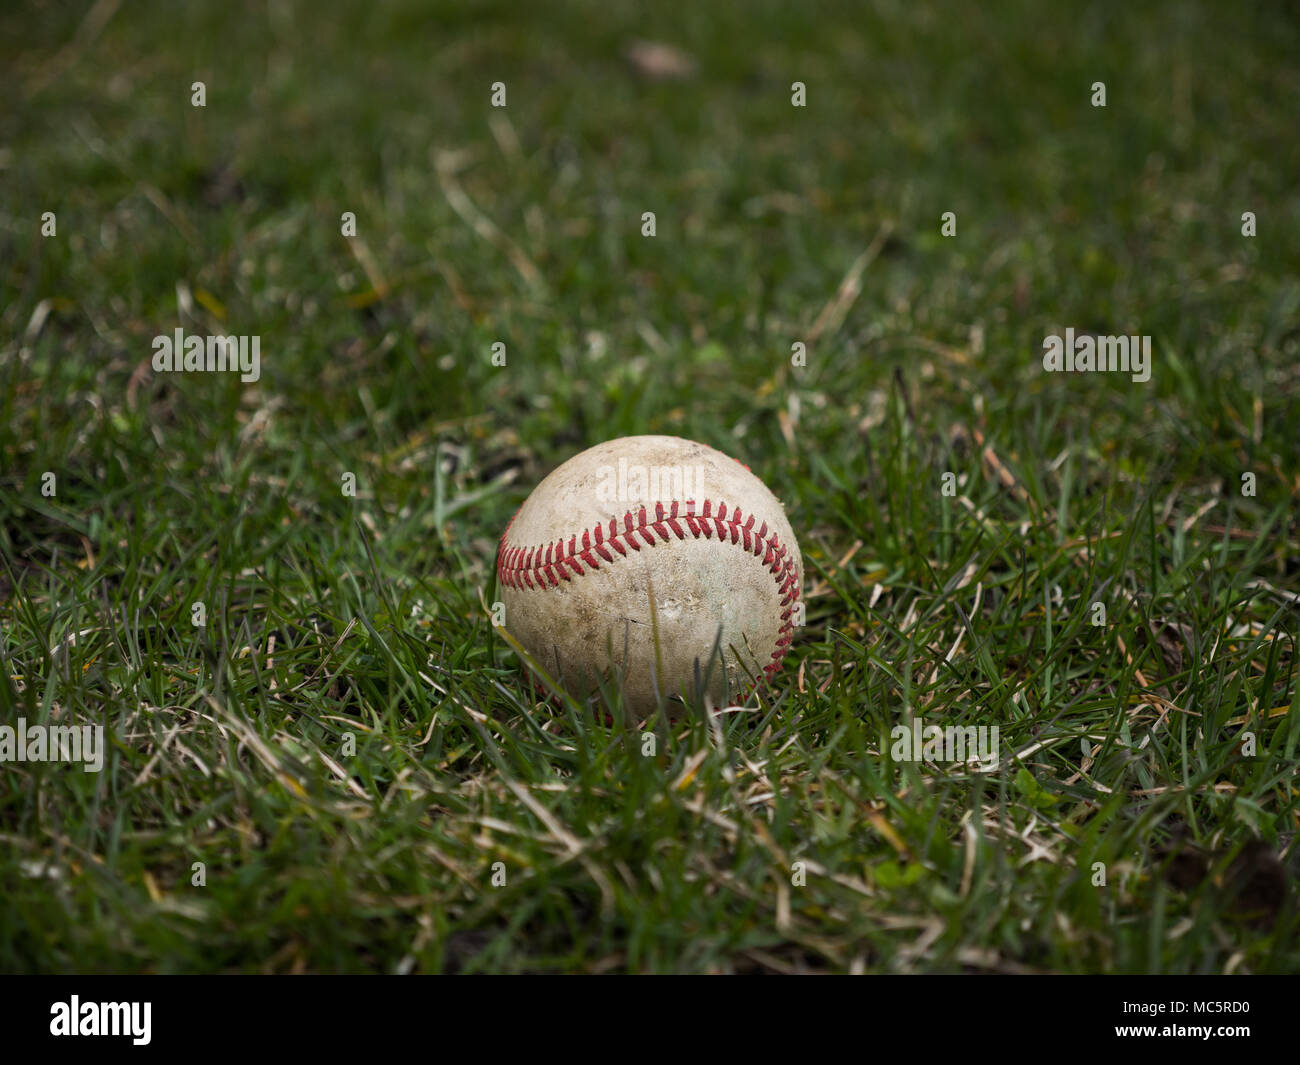 Imagen de fondo deportivo cerca de un antiguo utilizado piel gastada pelota de béisbol poniendo en el campo de hierba fuera mostrando detalles intrincados y textura Foto de stock